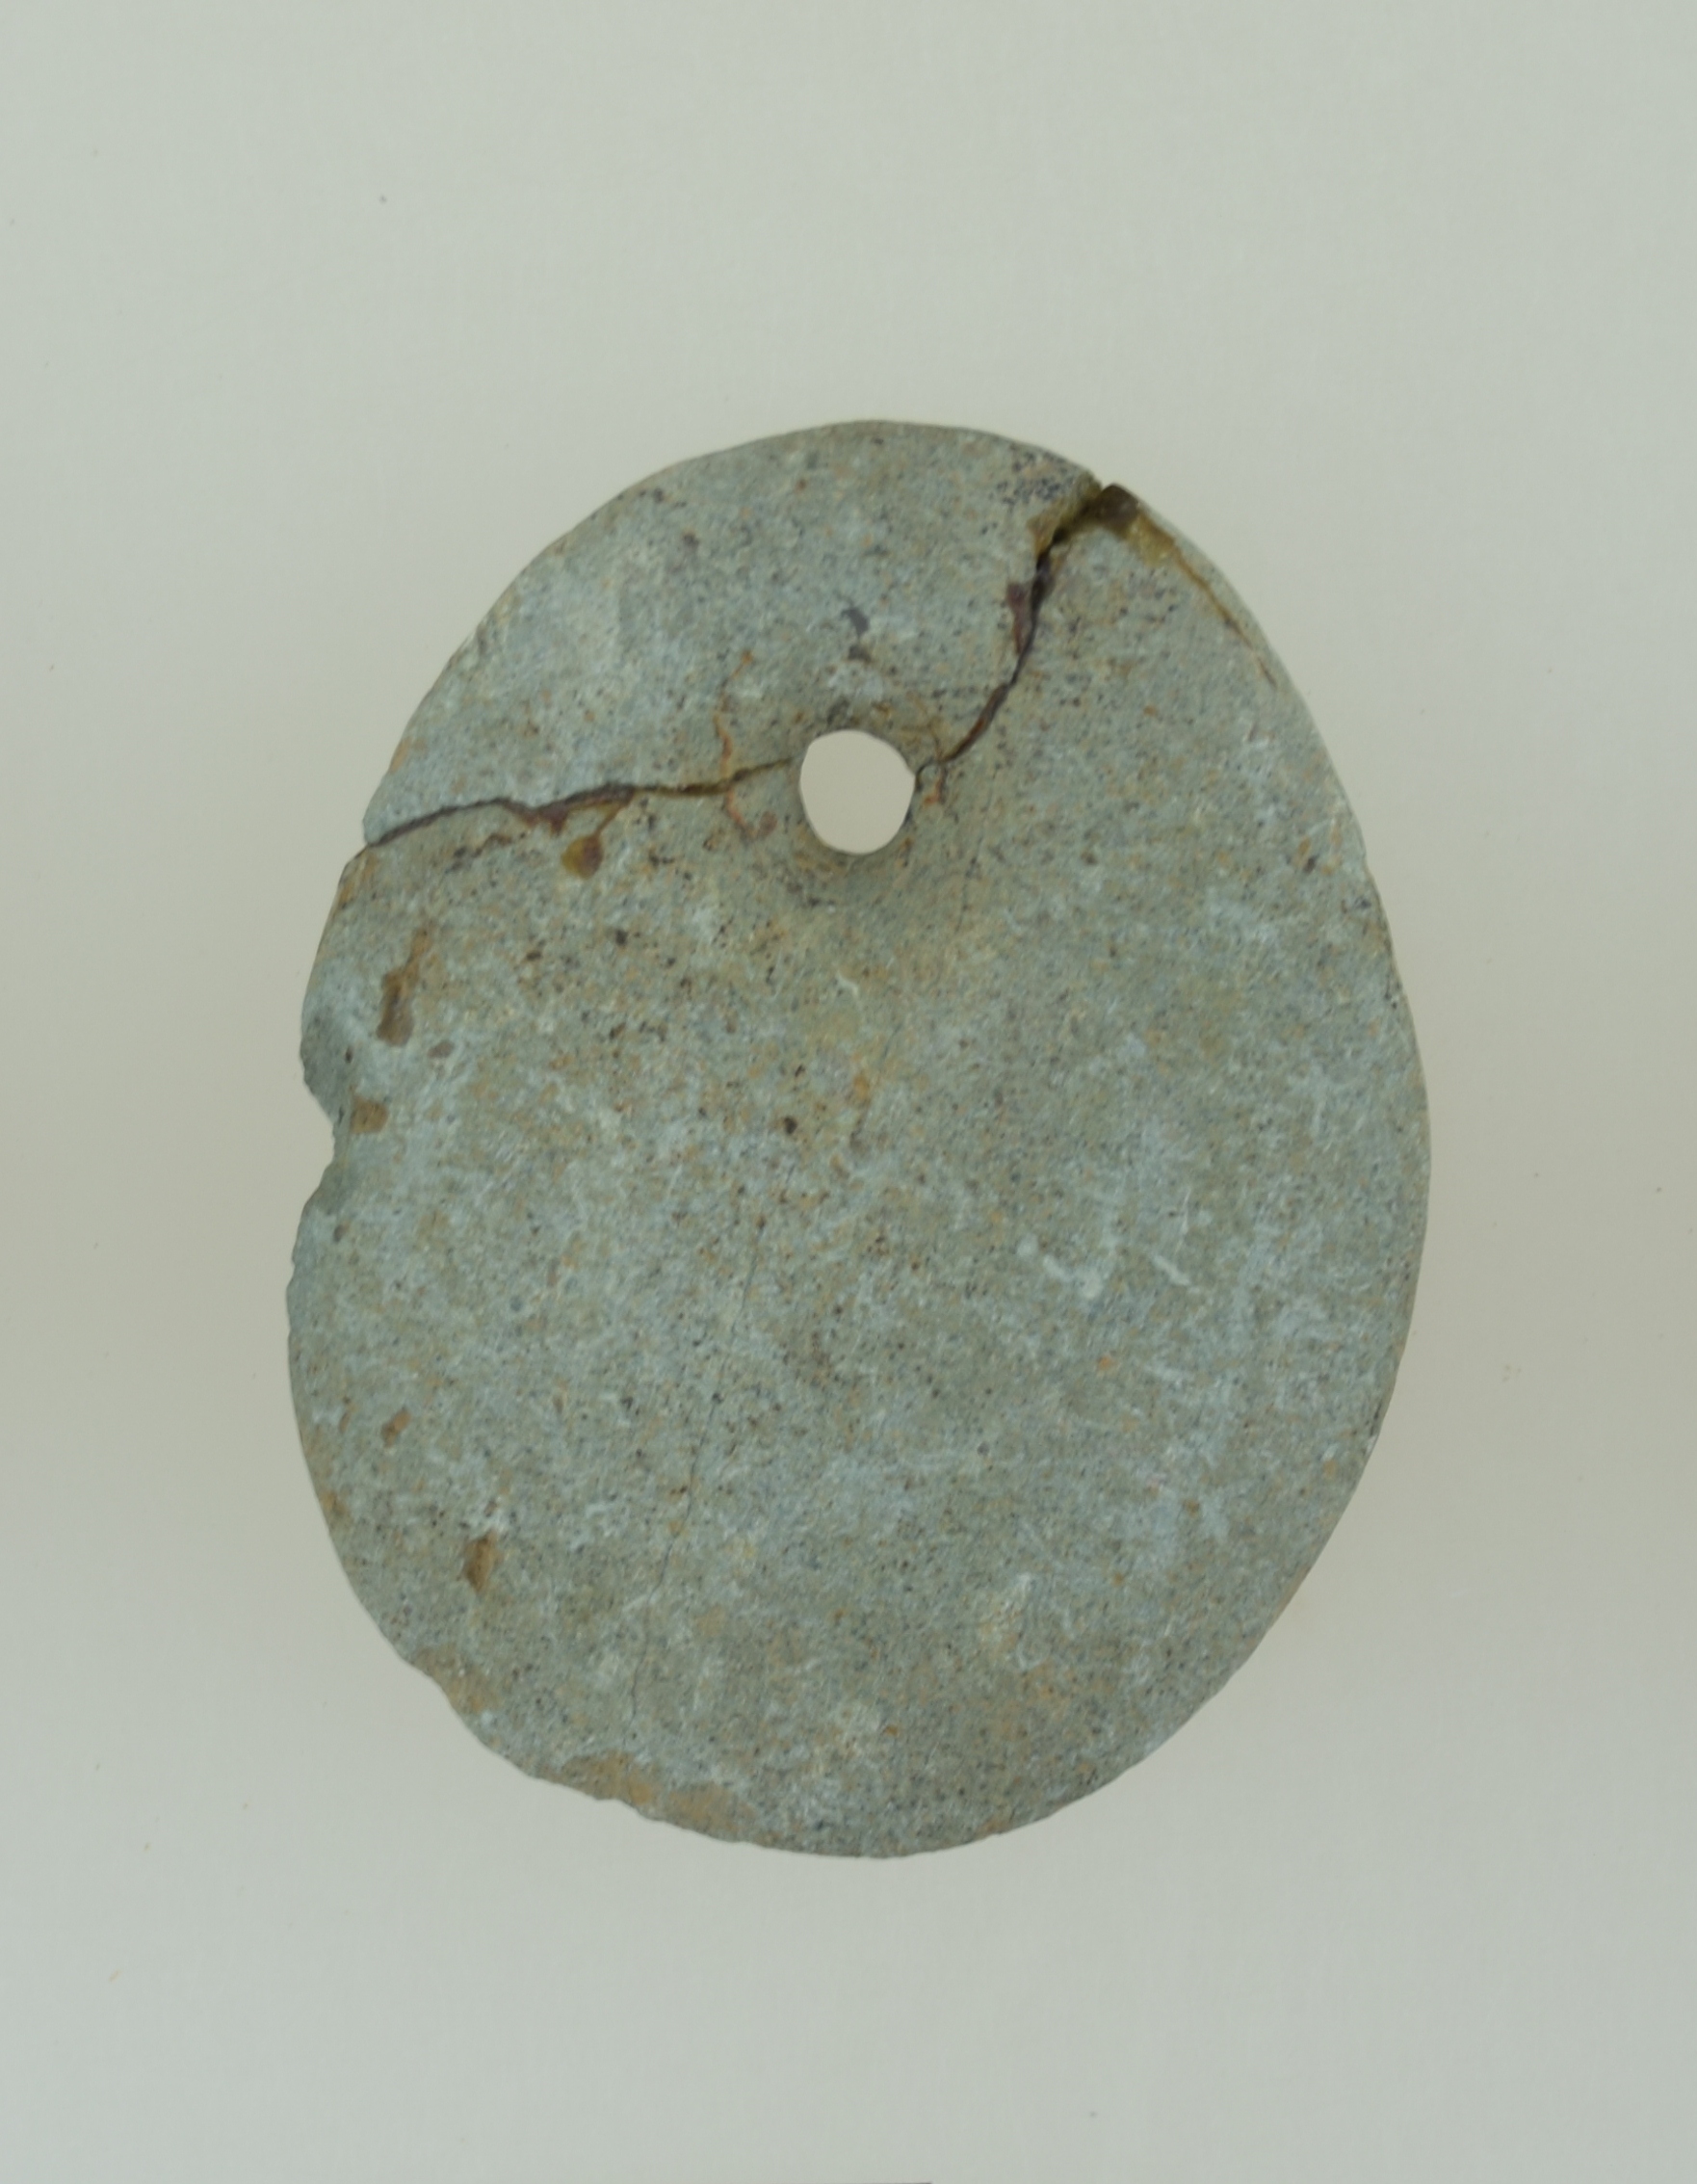 ქვის საკიდი, ხელვაჩაური, სოფ. მახვილაური, ძვ.წ. VII-VI ათასწლეული